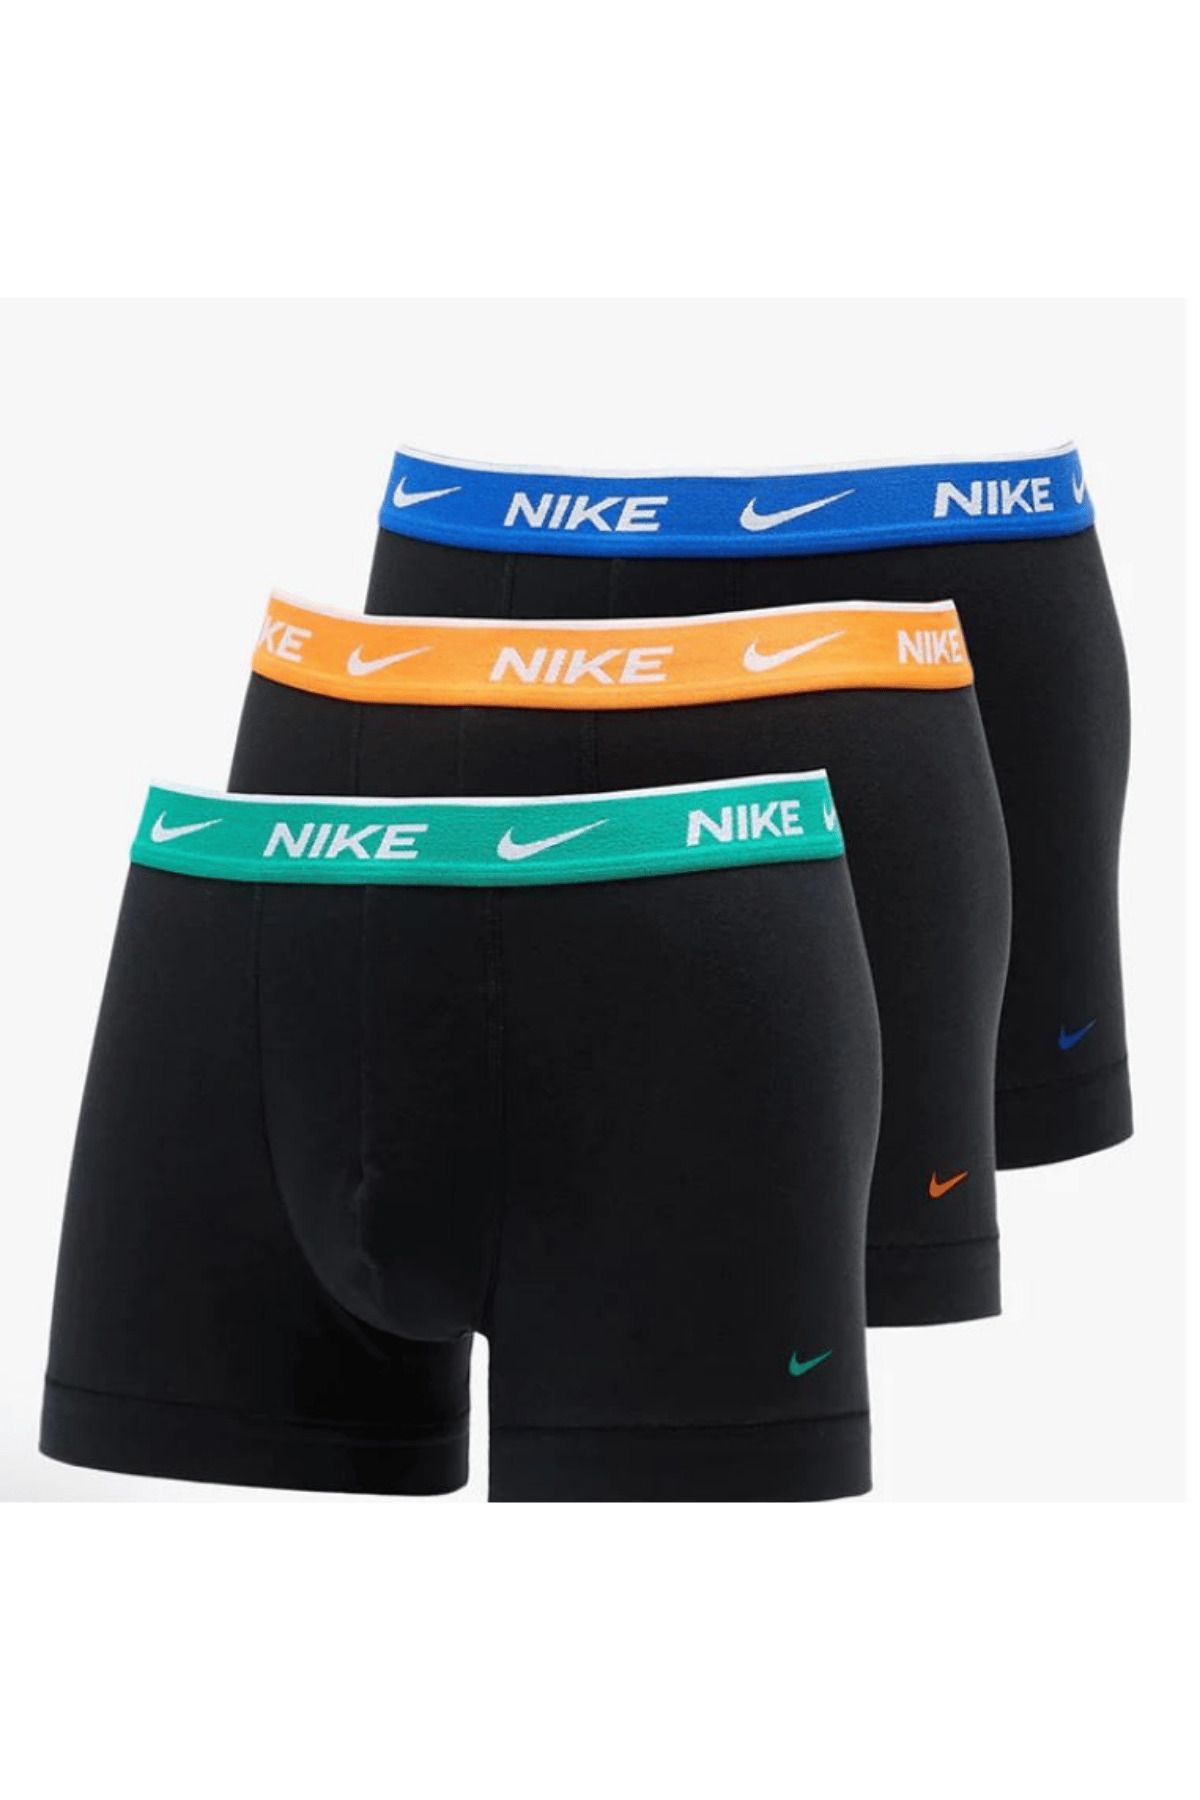 Nike Erkek Nike Marka Logolu Elastik Bantlı Günlük Kullanıma Uygun SİYAH Boxer 0000KE1008-LBE